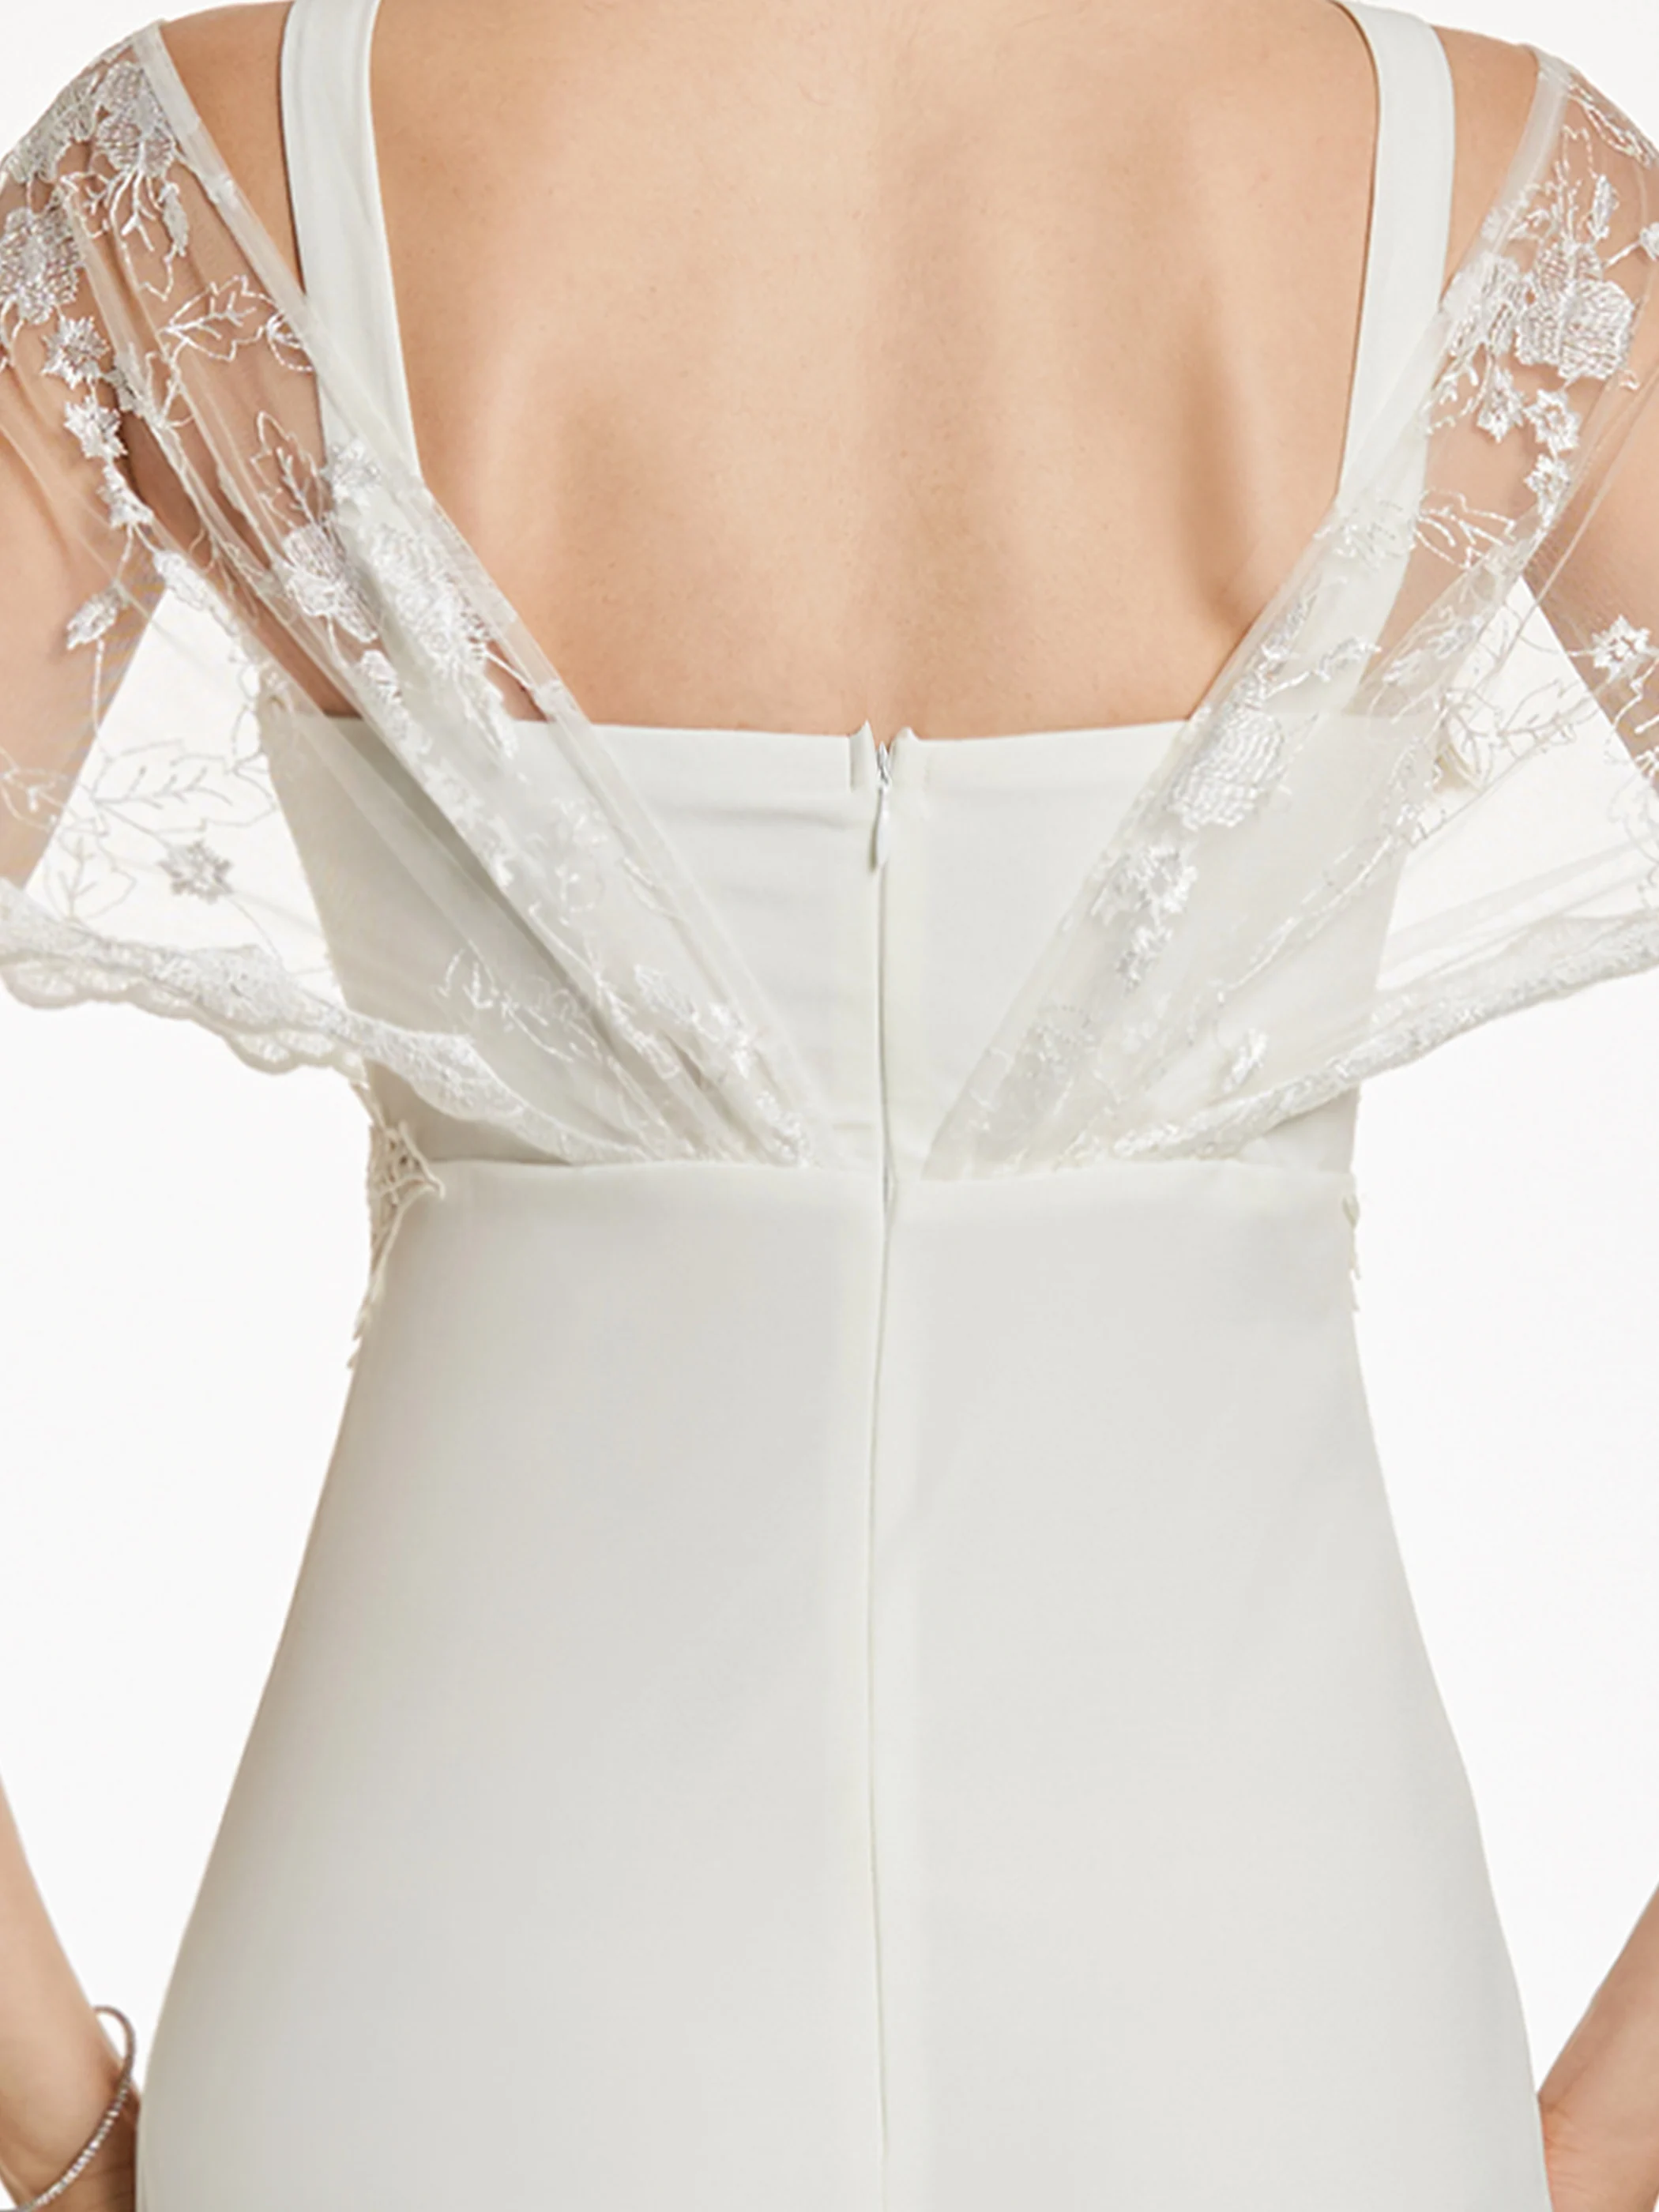 Dressv белое длинное недорогое вечернее платье с короткими рукавами, v-образным вырезом, аппликацией, свадебное вечернее платье, вечернее платье